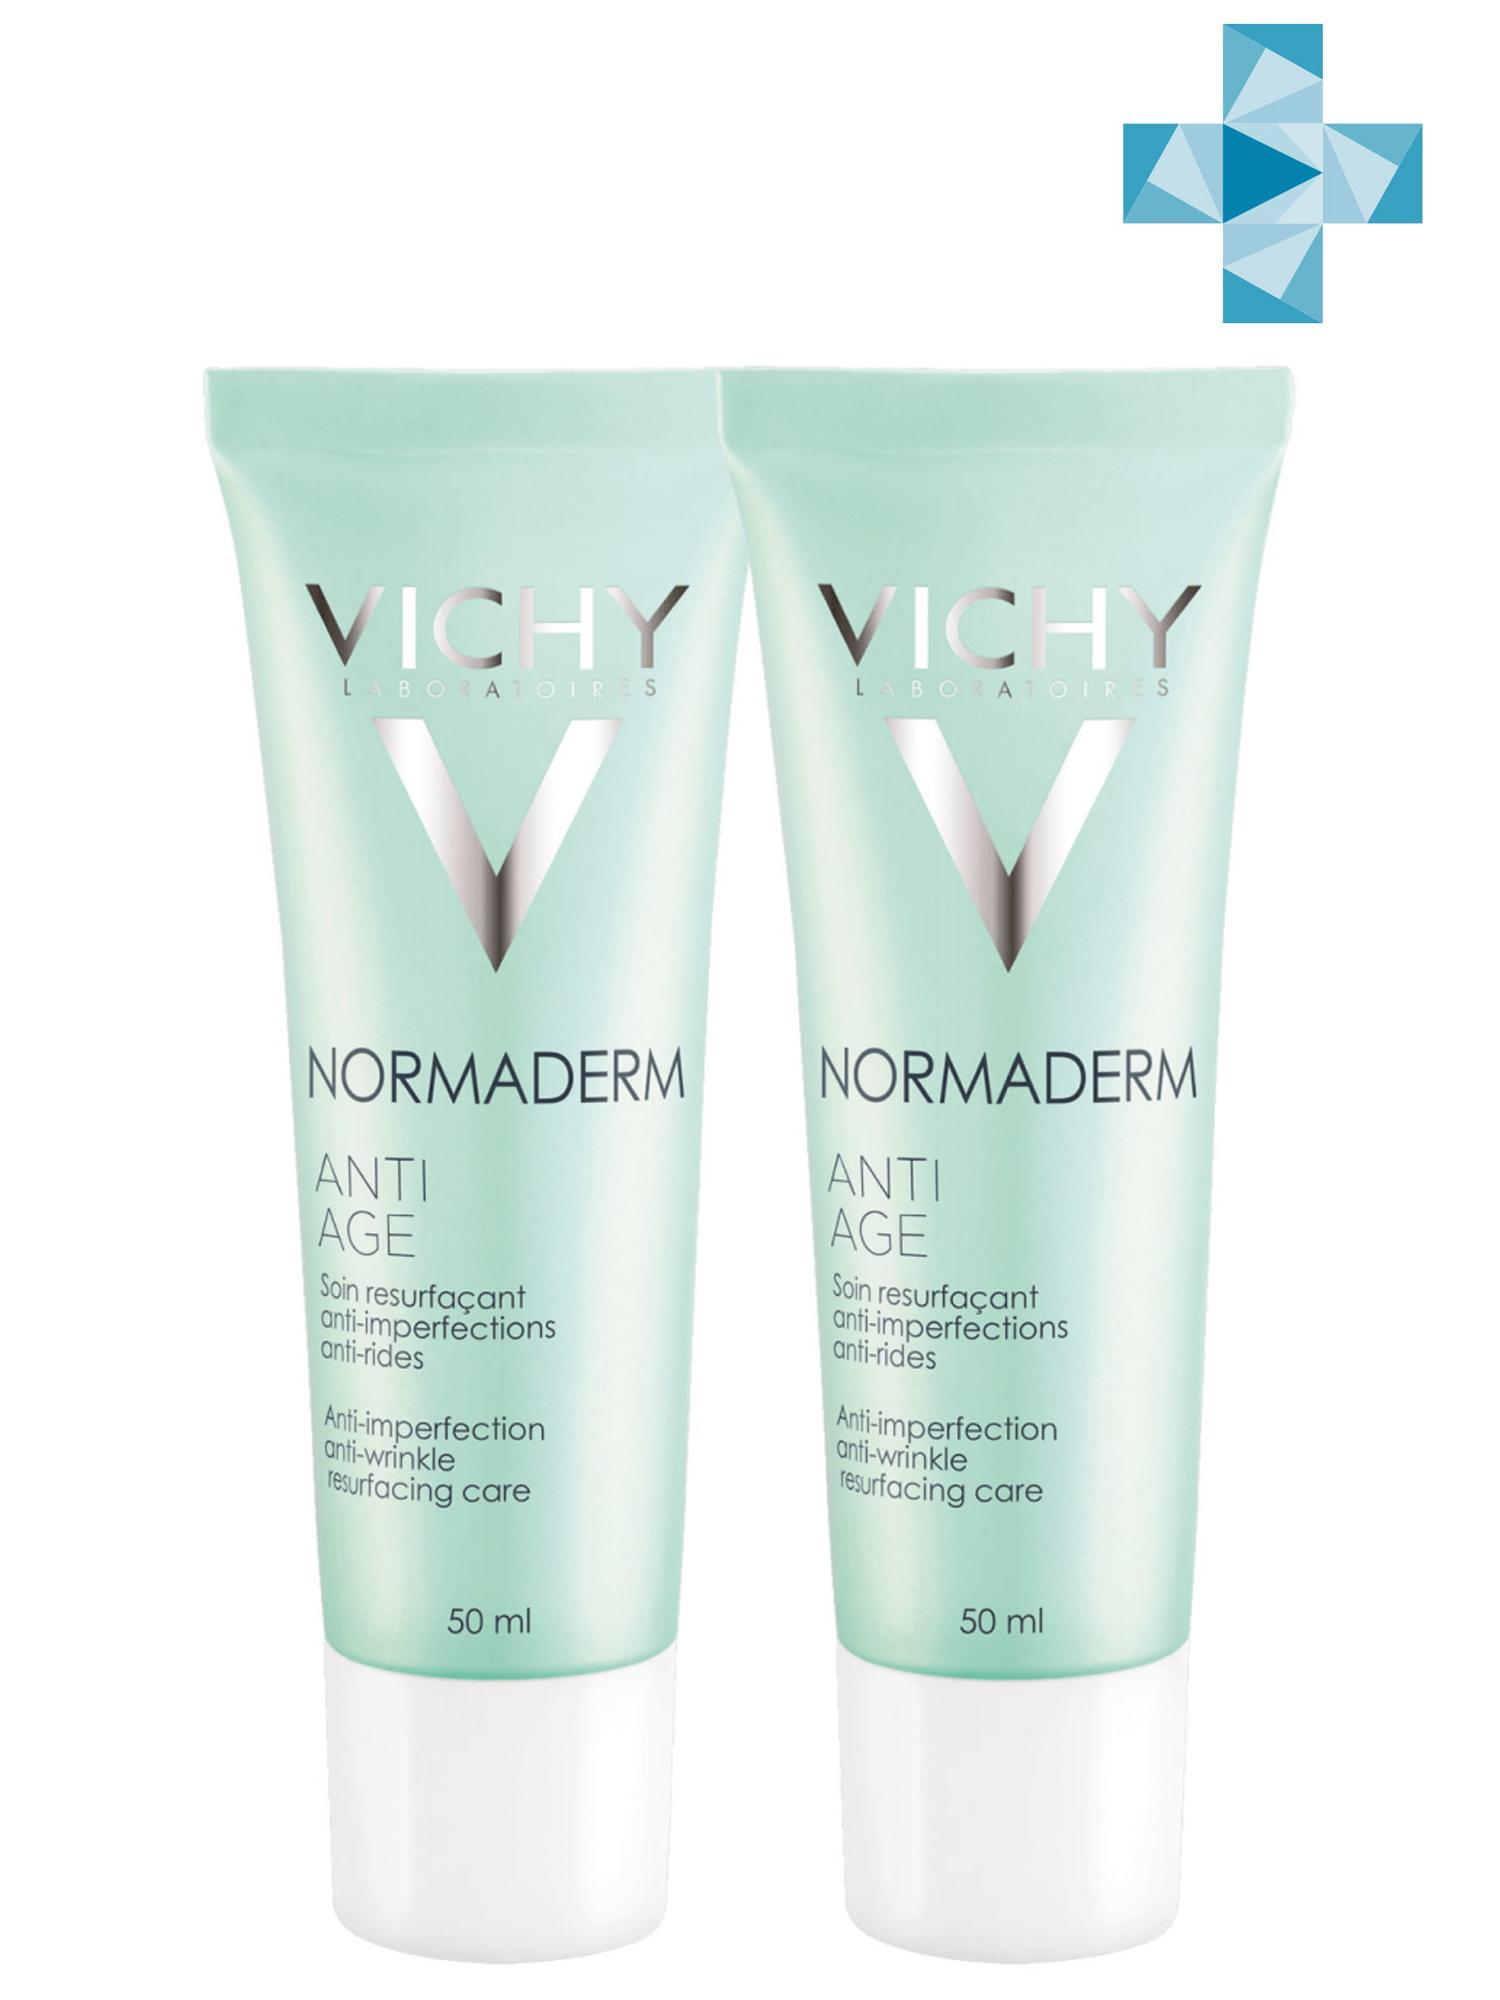 Купить Vichy Комплект Антивозрастной крем для проблемной кожи Нормадерм Анти - Эйдж, 2 шт. по 50 мл (Vichy, Normaderm), Франция